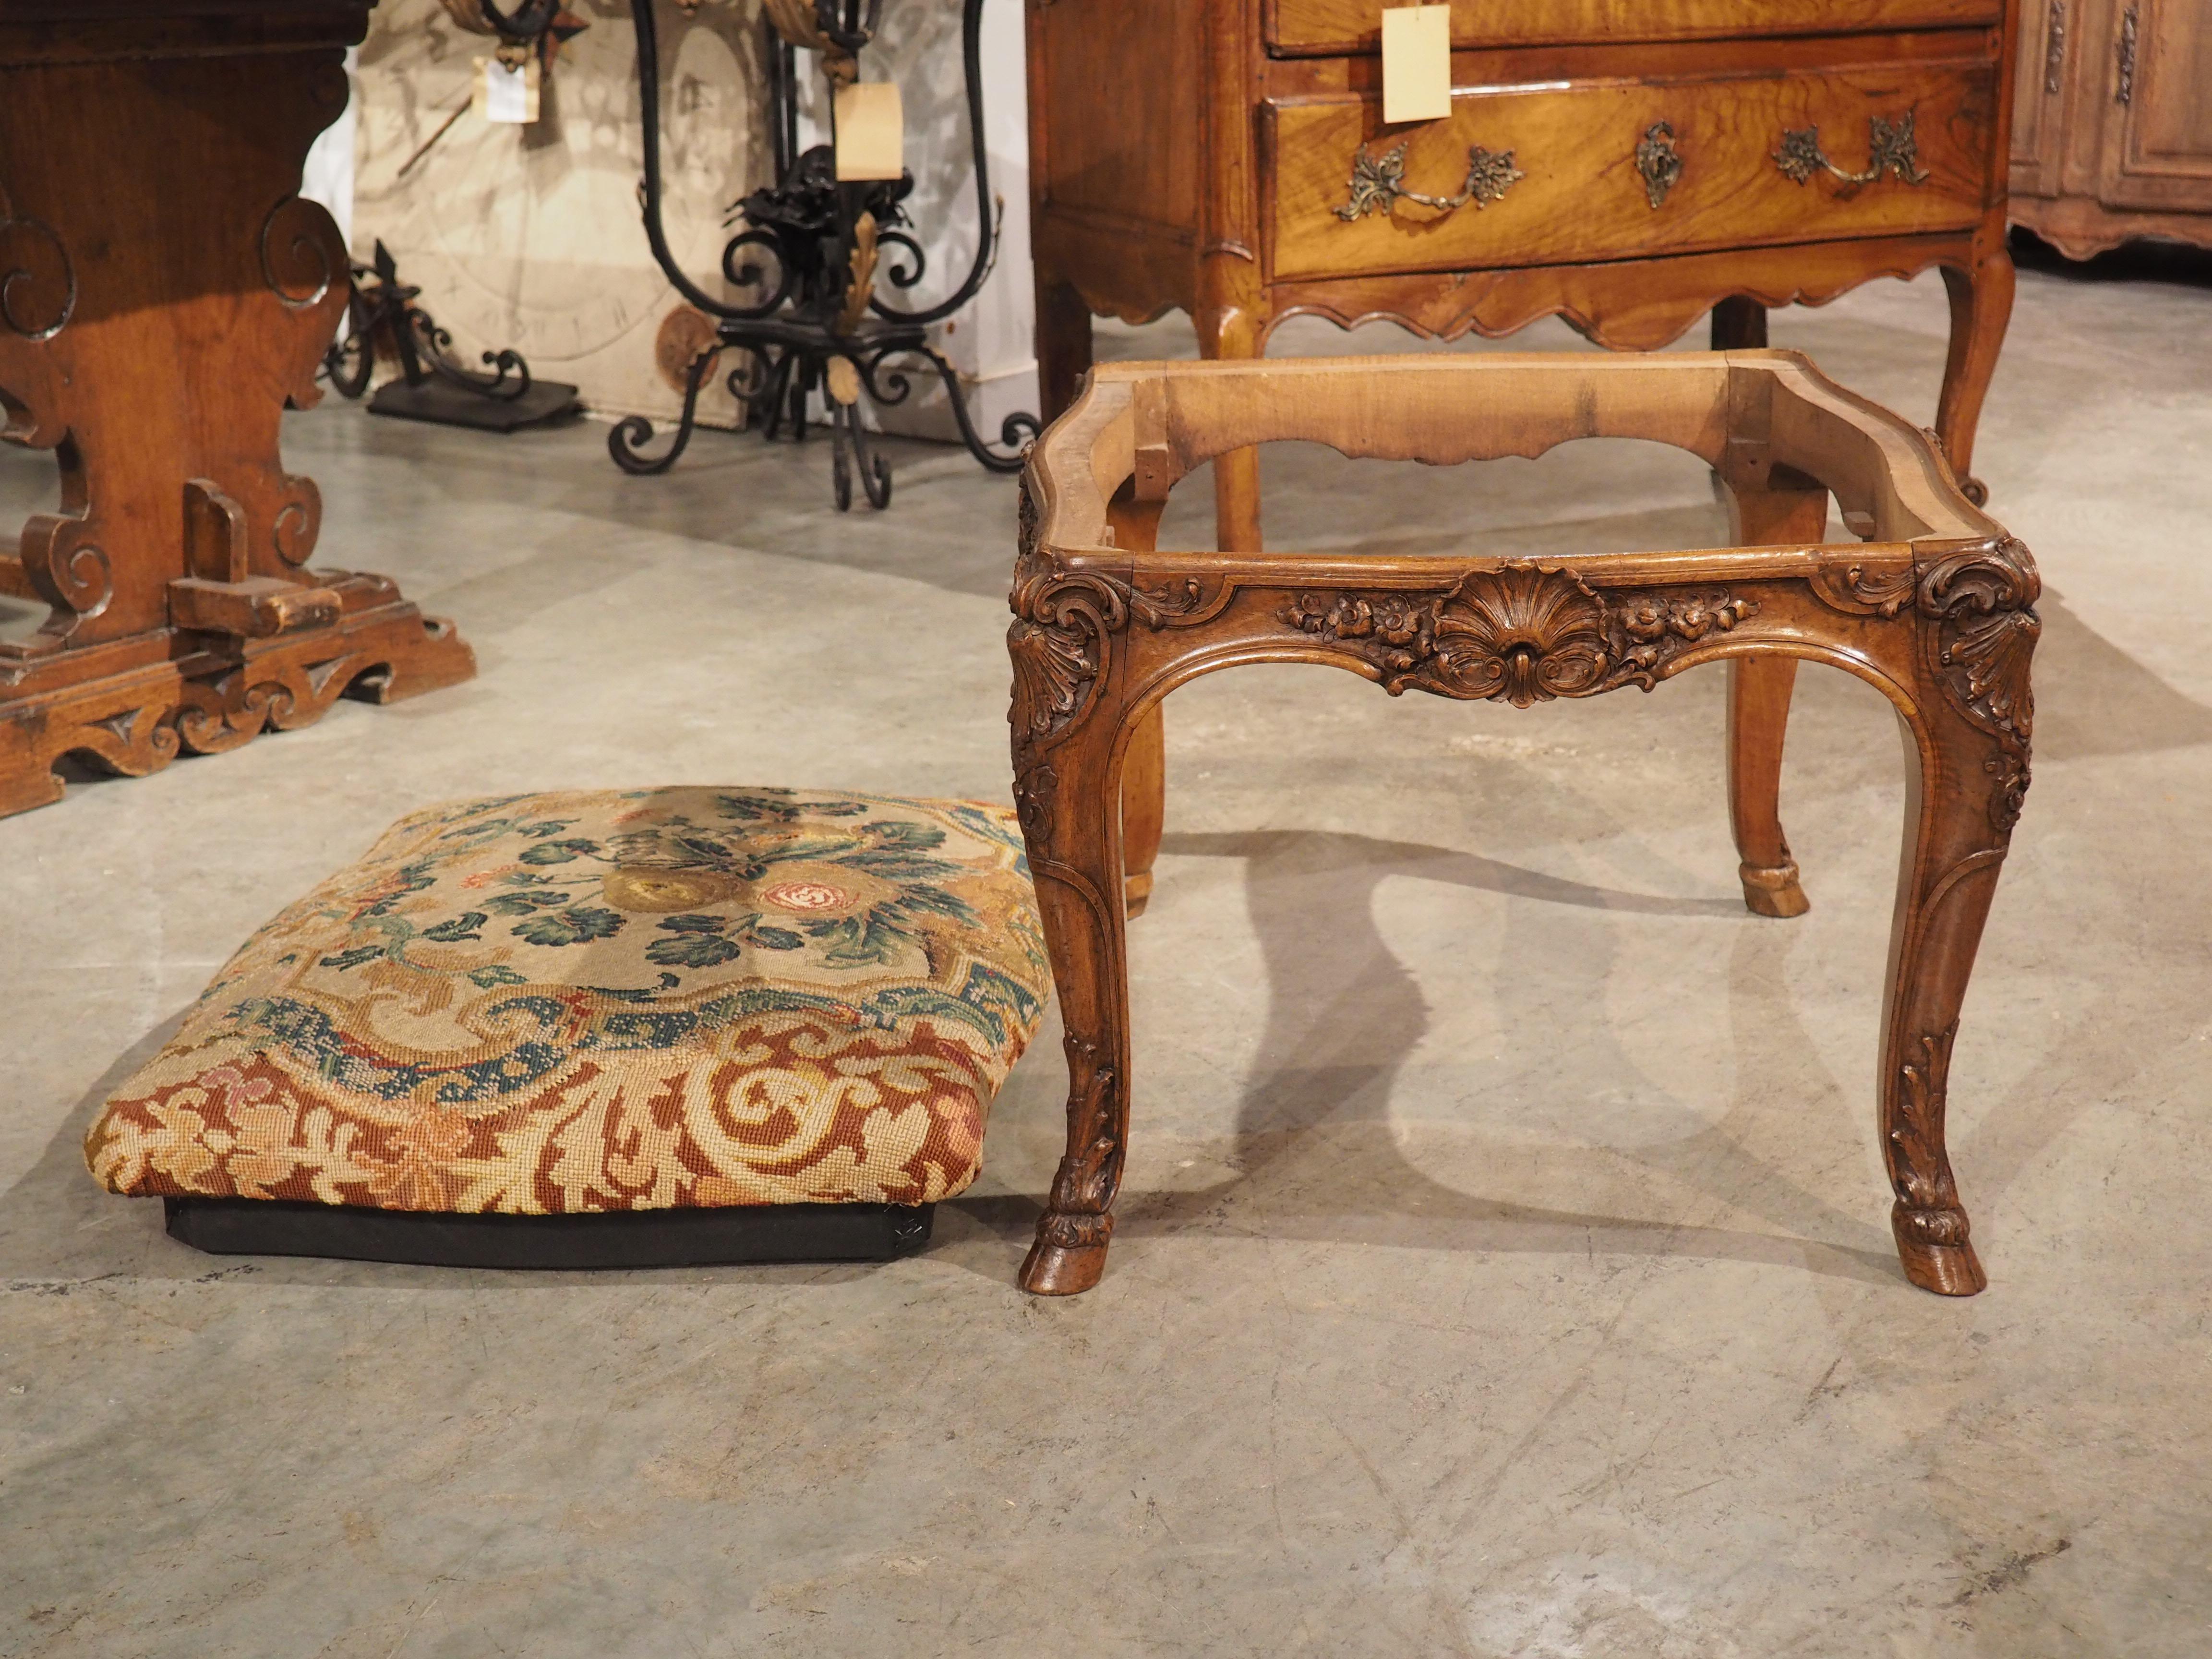 Dieser Tabouret im Regence-Stil wurde um 1800 in Frankreich aus reichem Nussbaumholz handgeschnitzt und trägt unter dem Sitz einen Produktionsstempel mit der Aufschrift 